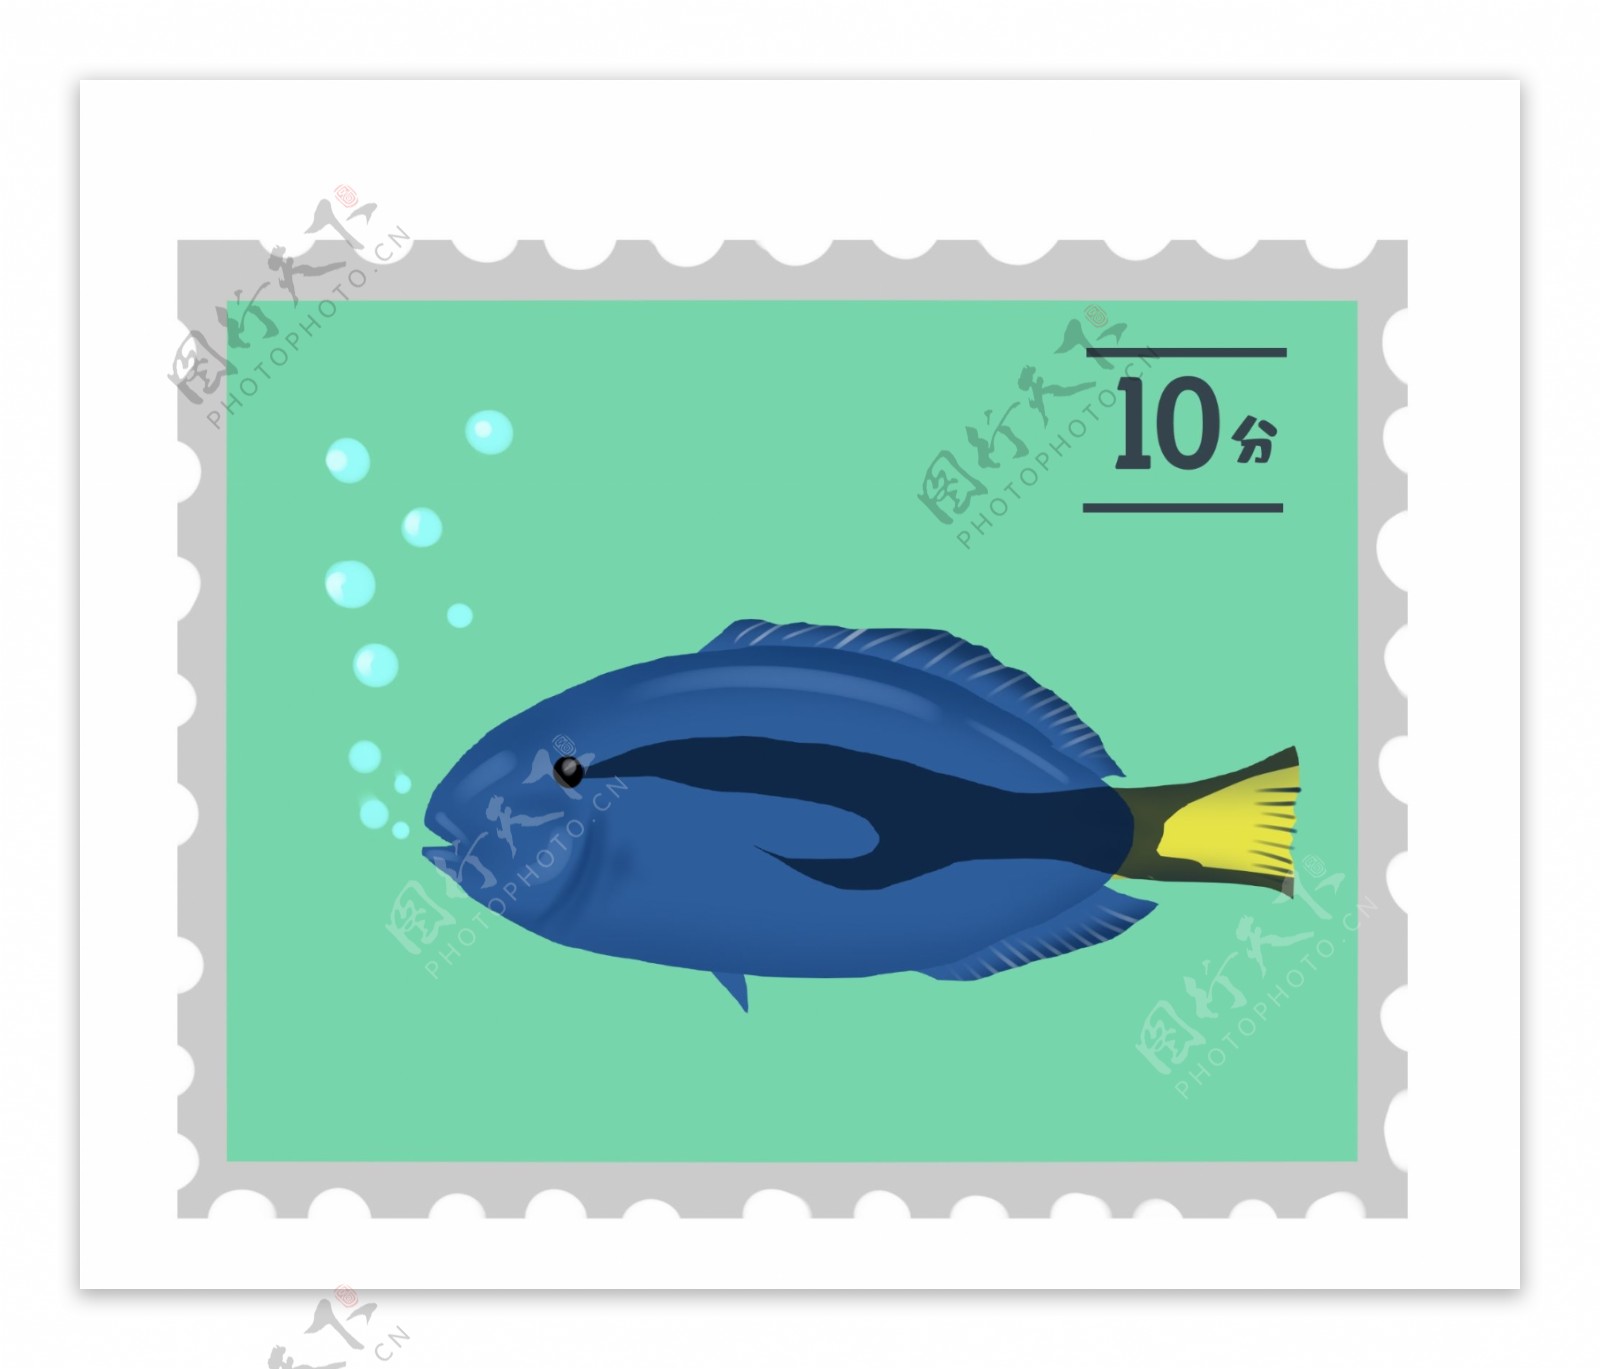 蓝肚鱼动物邮票